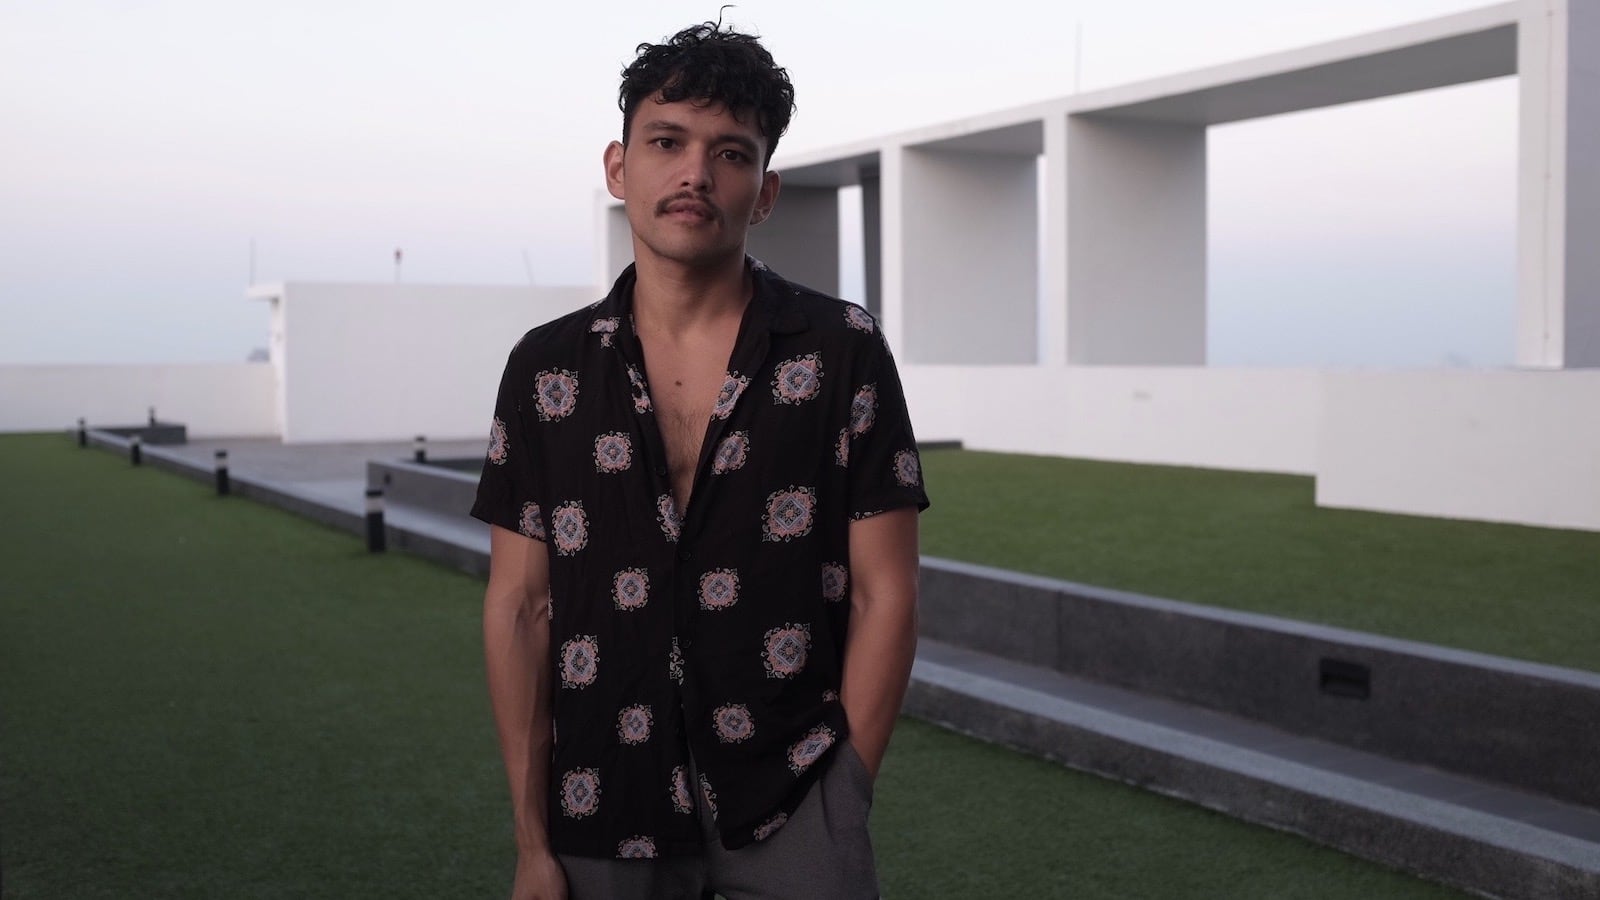 Saroj cute gay guy from Bangkok tells us about gay life in Thailand